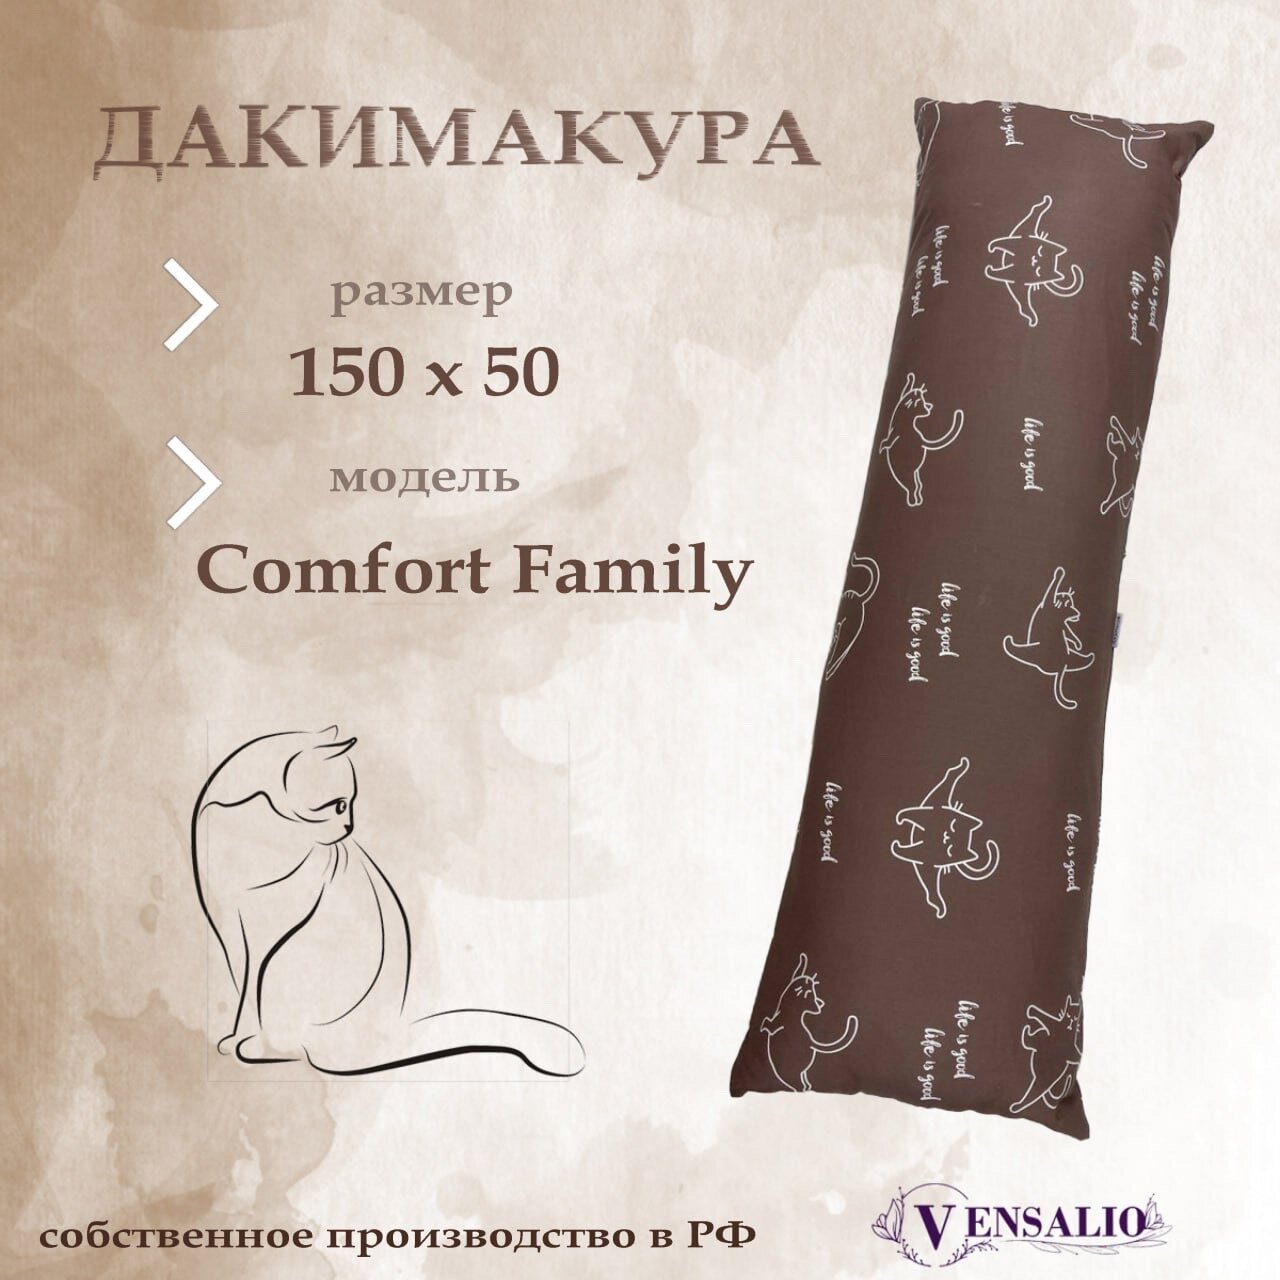 Подушка для беременных Vensalio I-150 дакимакура Comfort Family "Кошки", белая с коричневым, 150х50